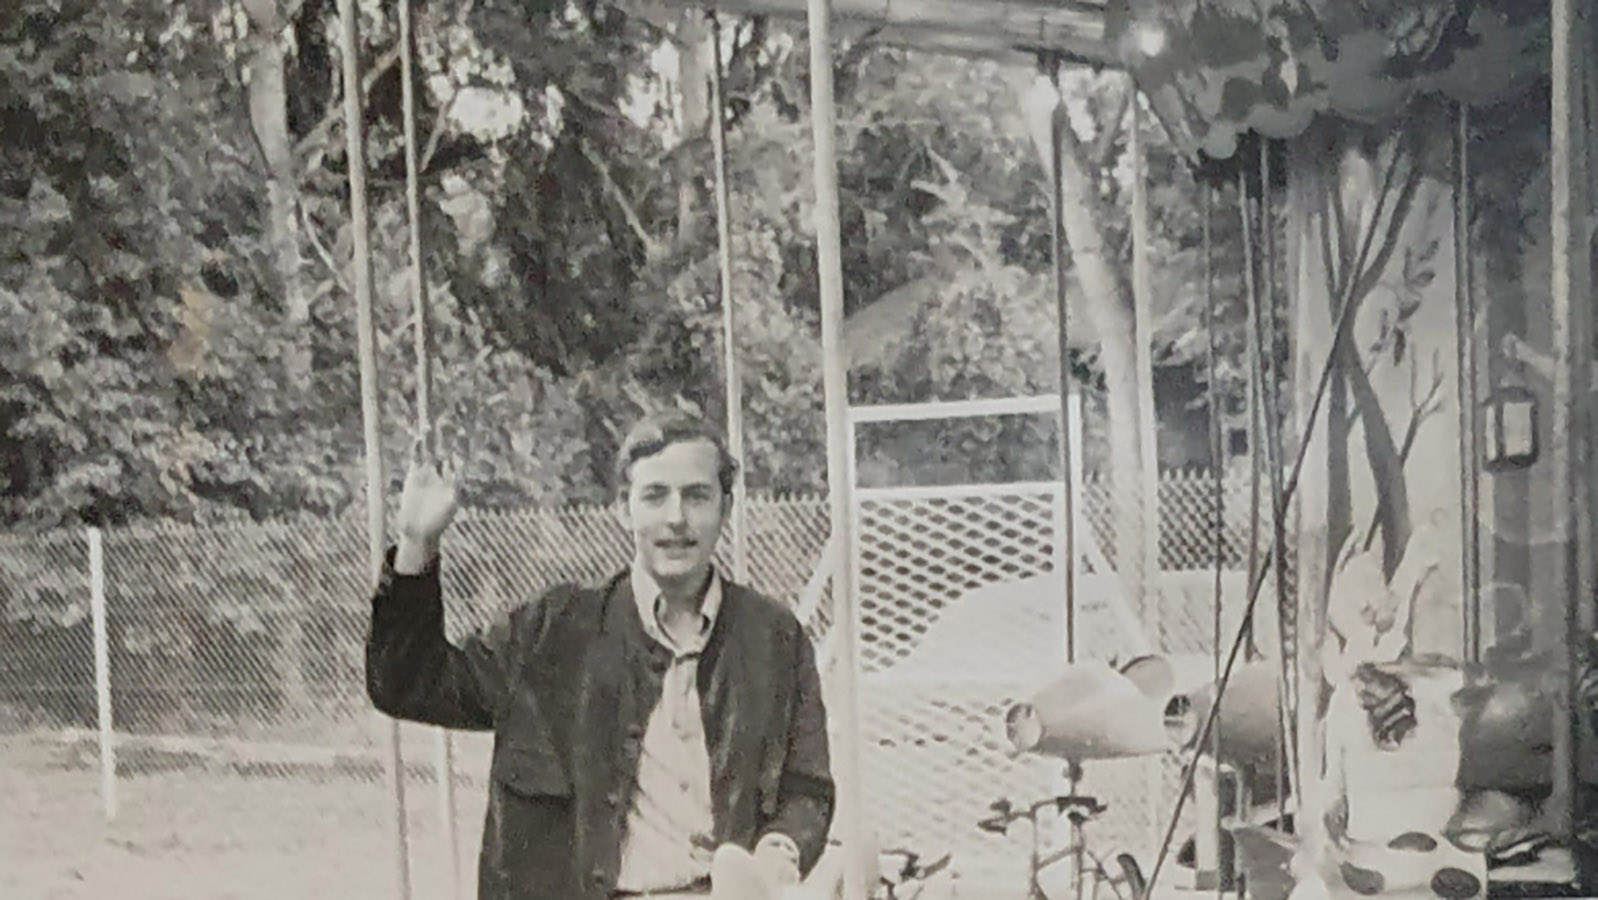 Mein erster Besuch in Paris! (1968) Das Karussell im Jardin du Luxembourg hat Rilke in einem Gedicht verewigt. Foto: privat